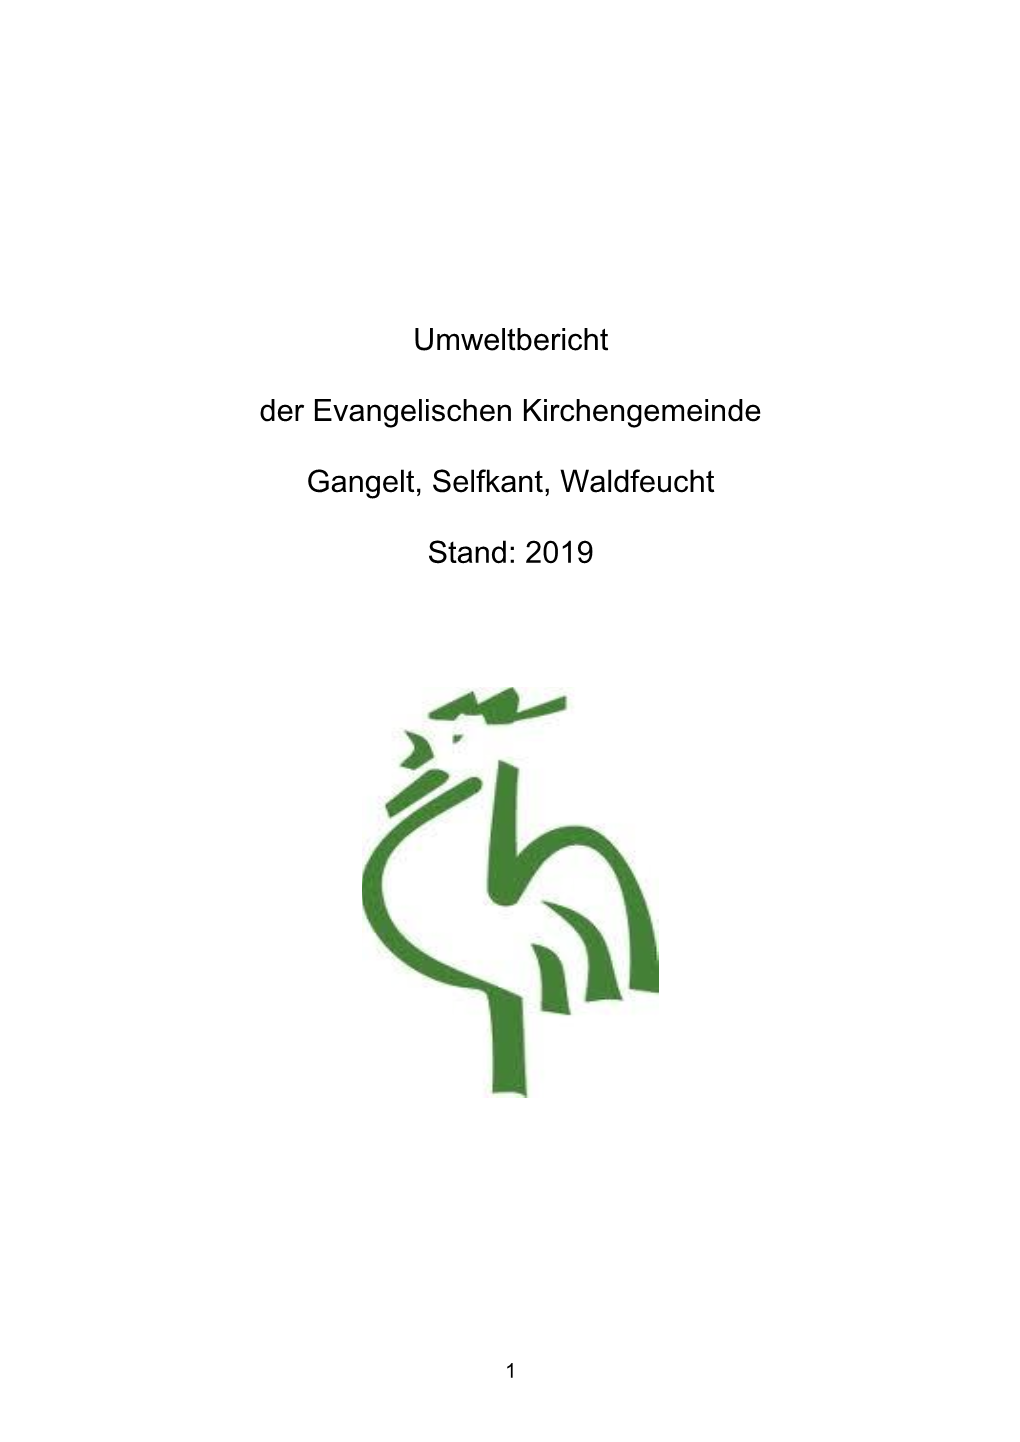 Umweltbericht Grüner Hahn Gangelt Selfkant Waldfeucht 2019